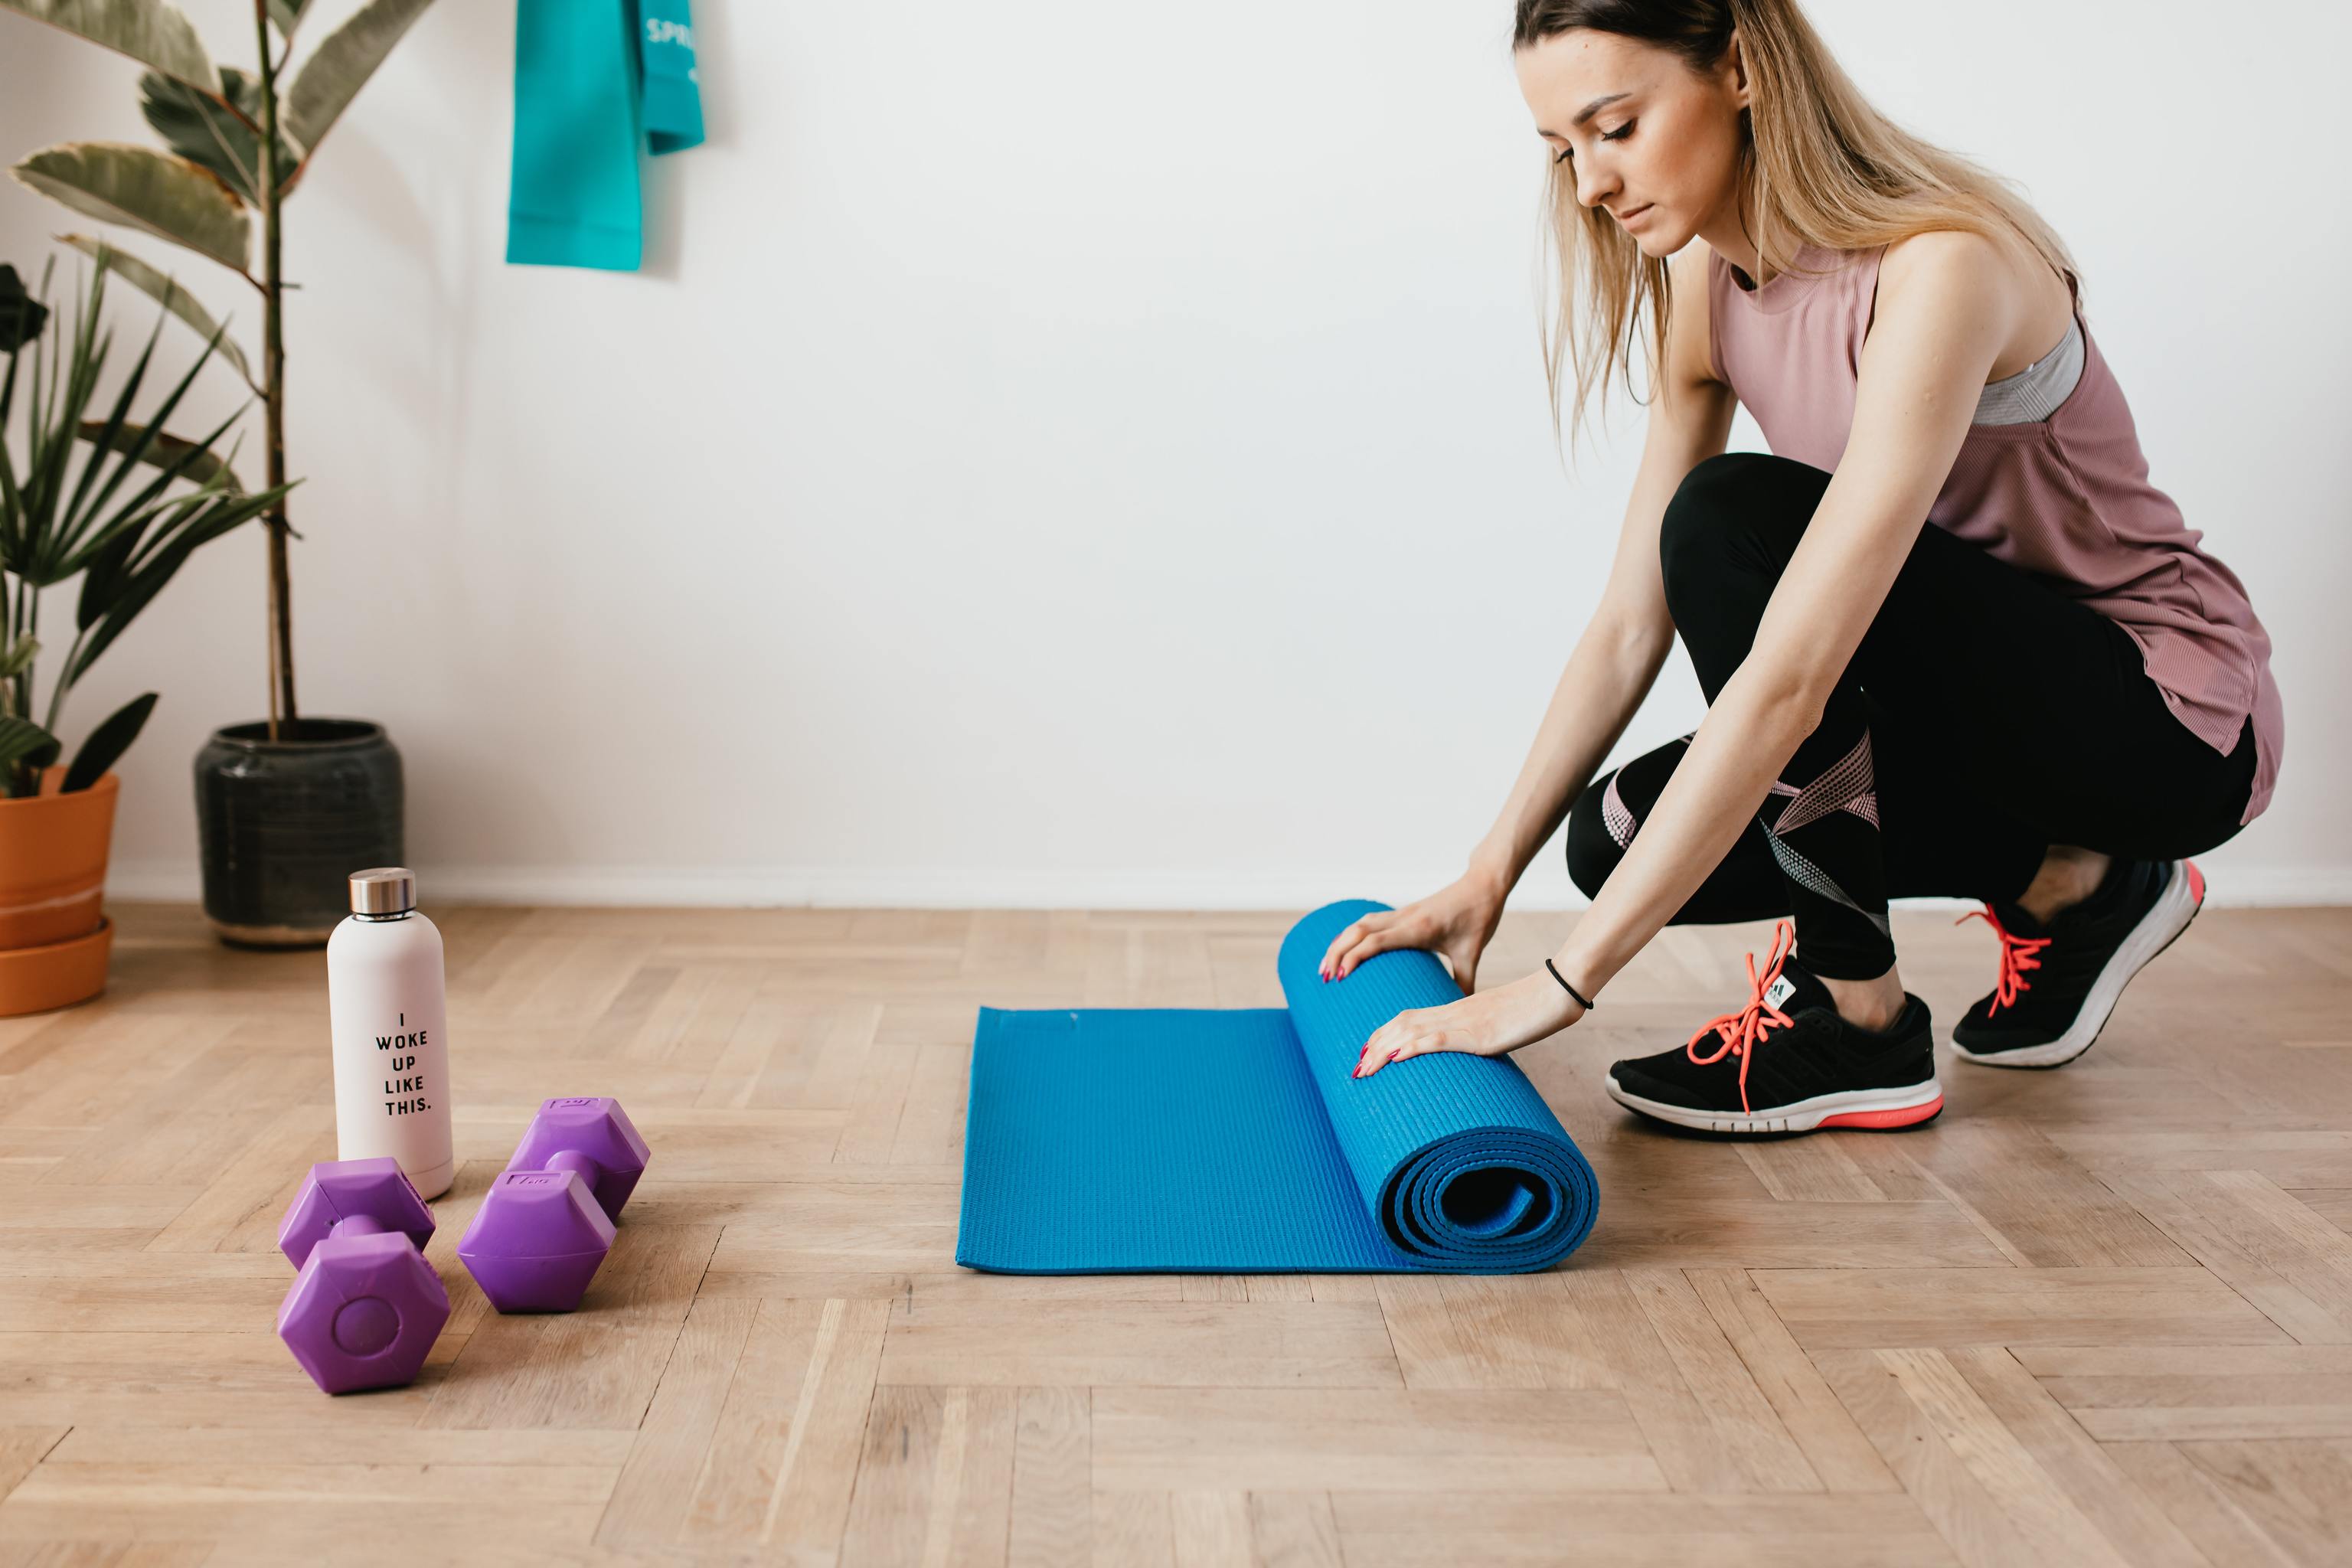 ALT: Pilates en casa: 5 ejercicios y vdeos sencillos para ponerte en forma sin ir al gimnasio